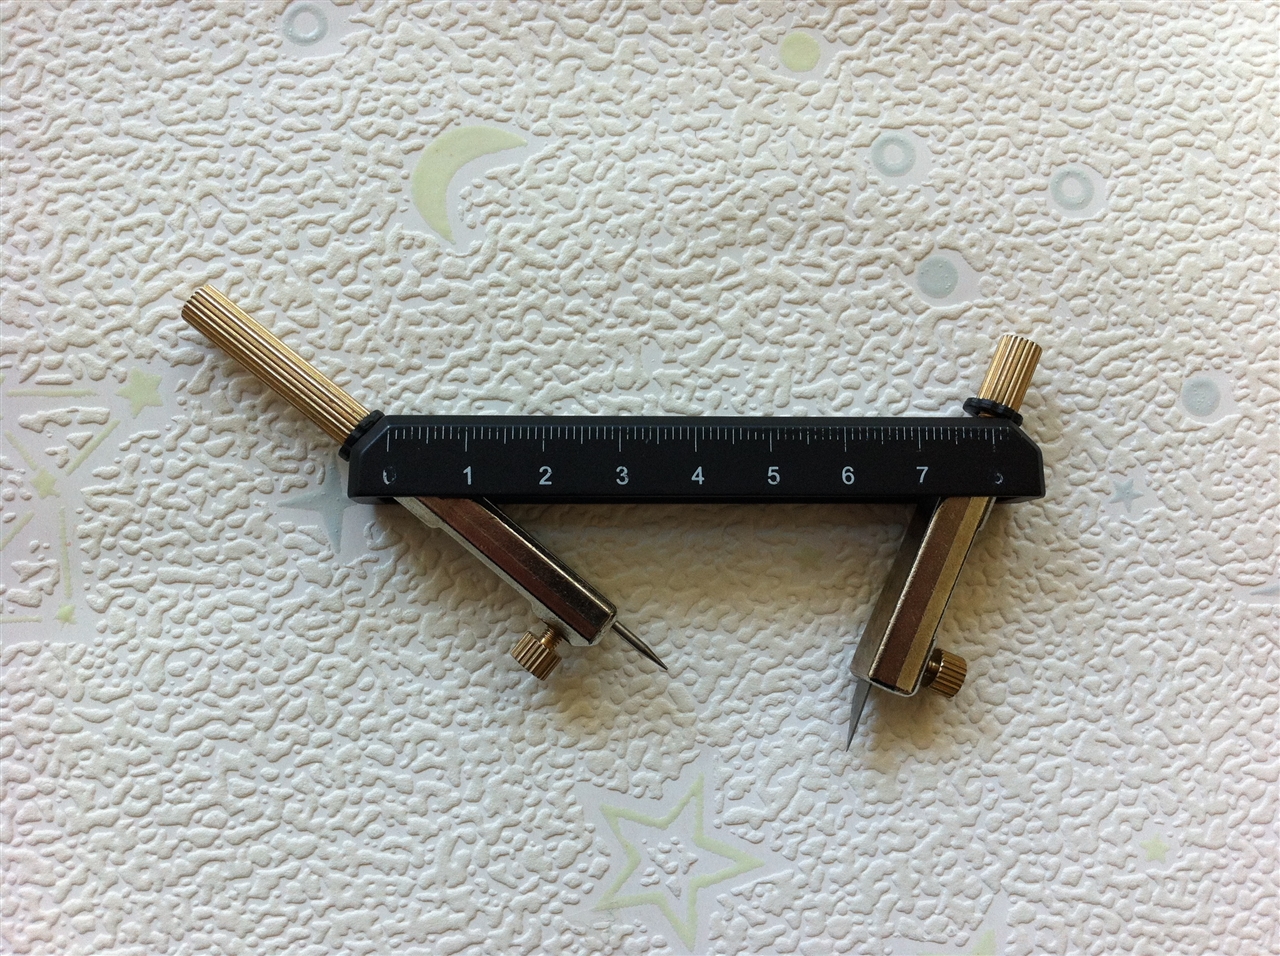 文华工具 mw-2172 模型制作工具 圆规刀 circle cutter ( 1 5 blades)